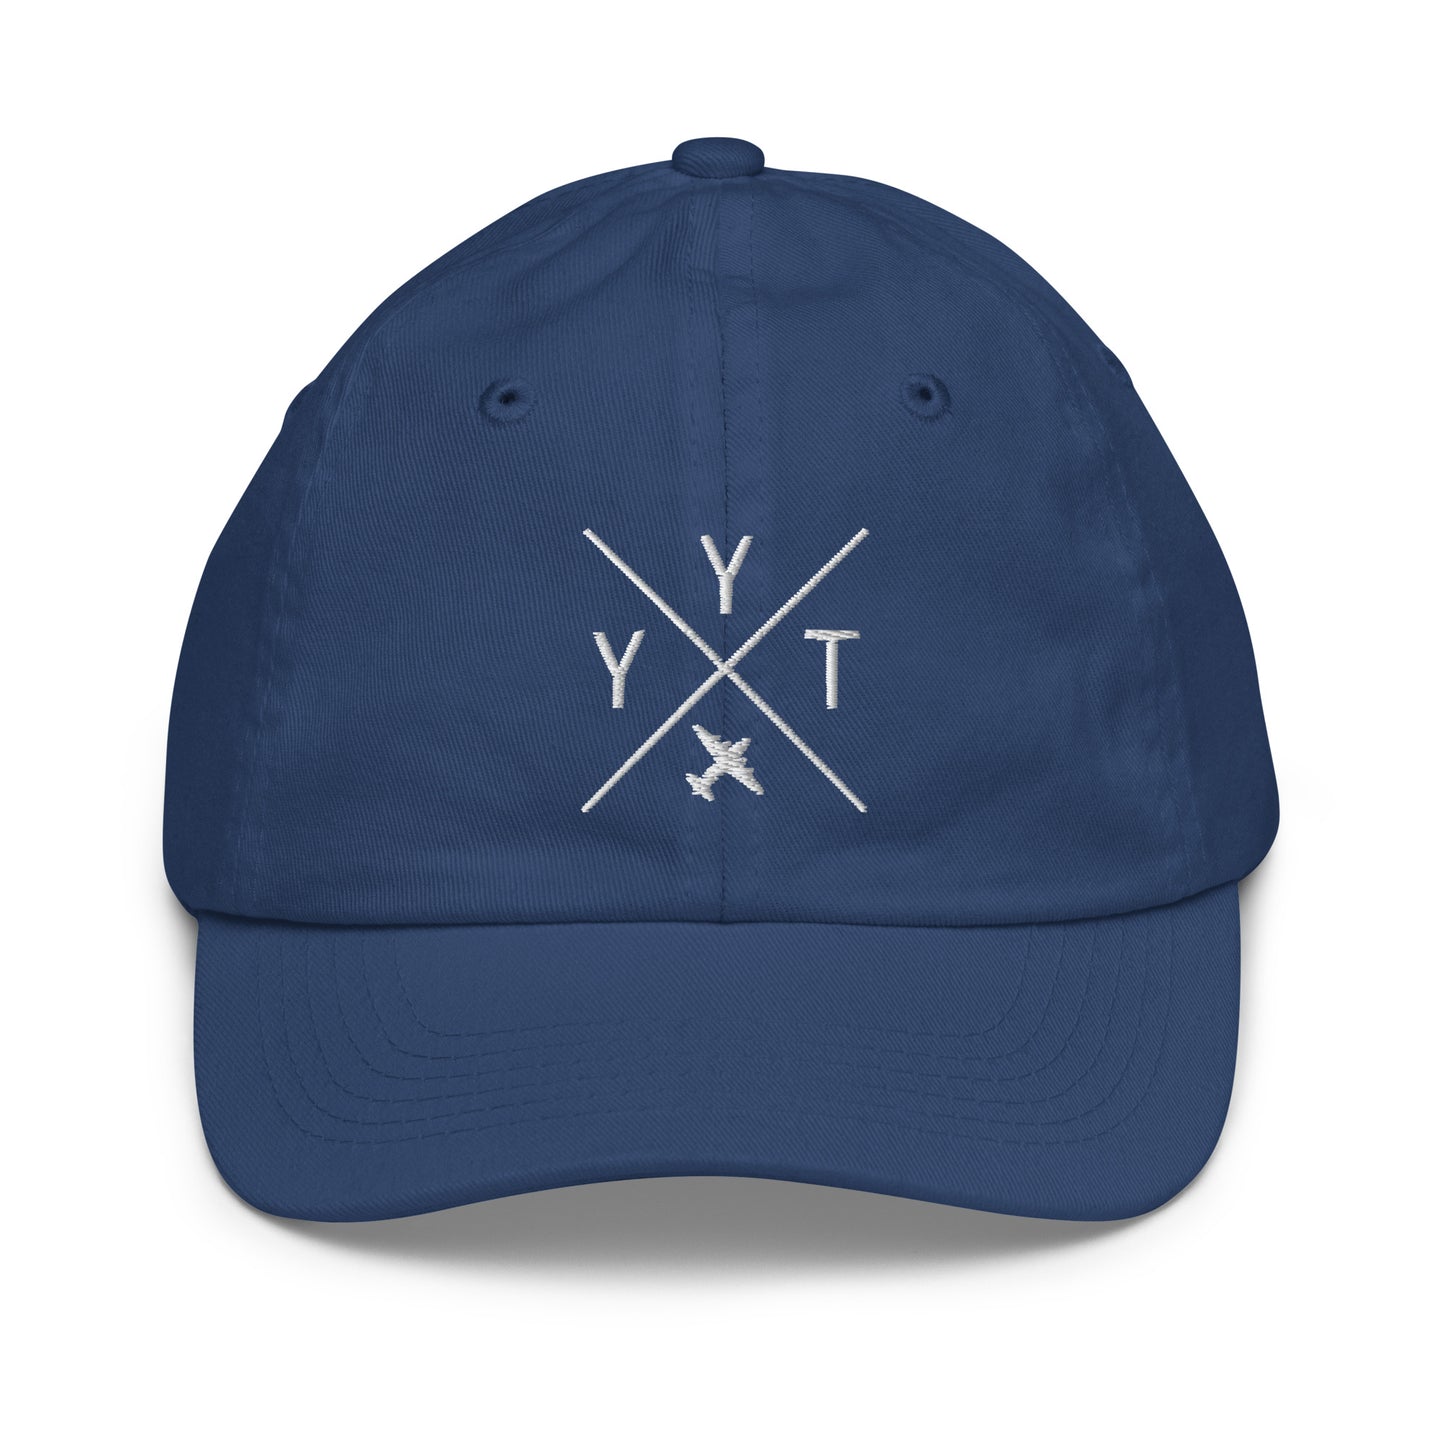 Crossed-X Kid's Baseball Cap - White • YYT St. John's • YHM Designs - Image 19